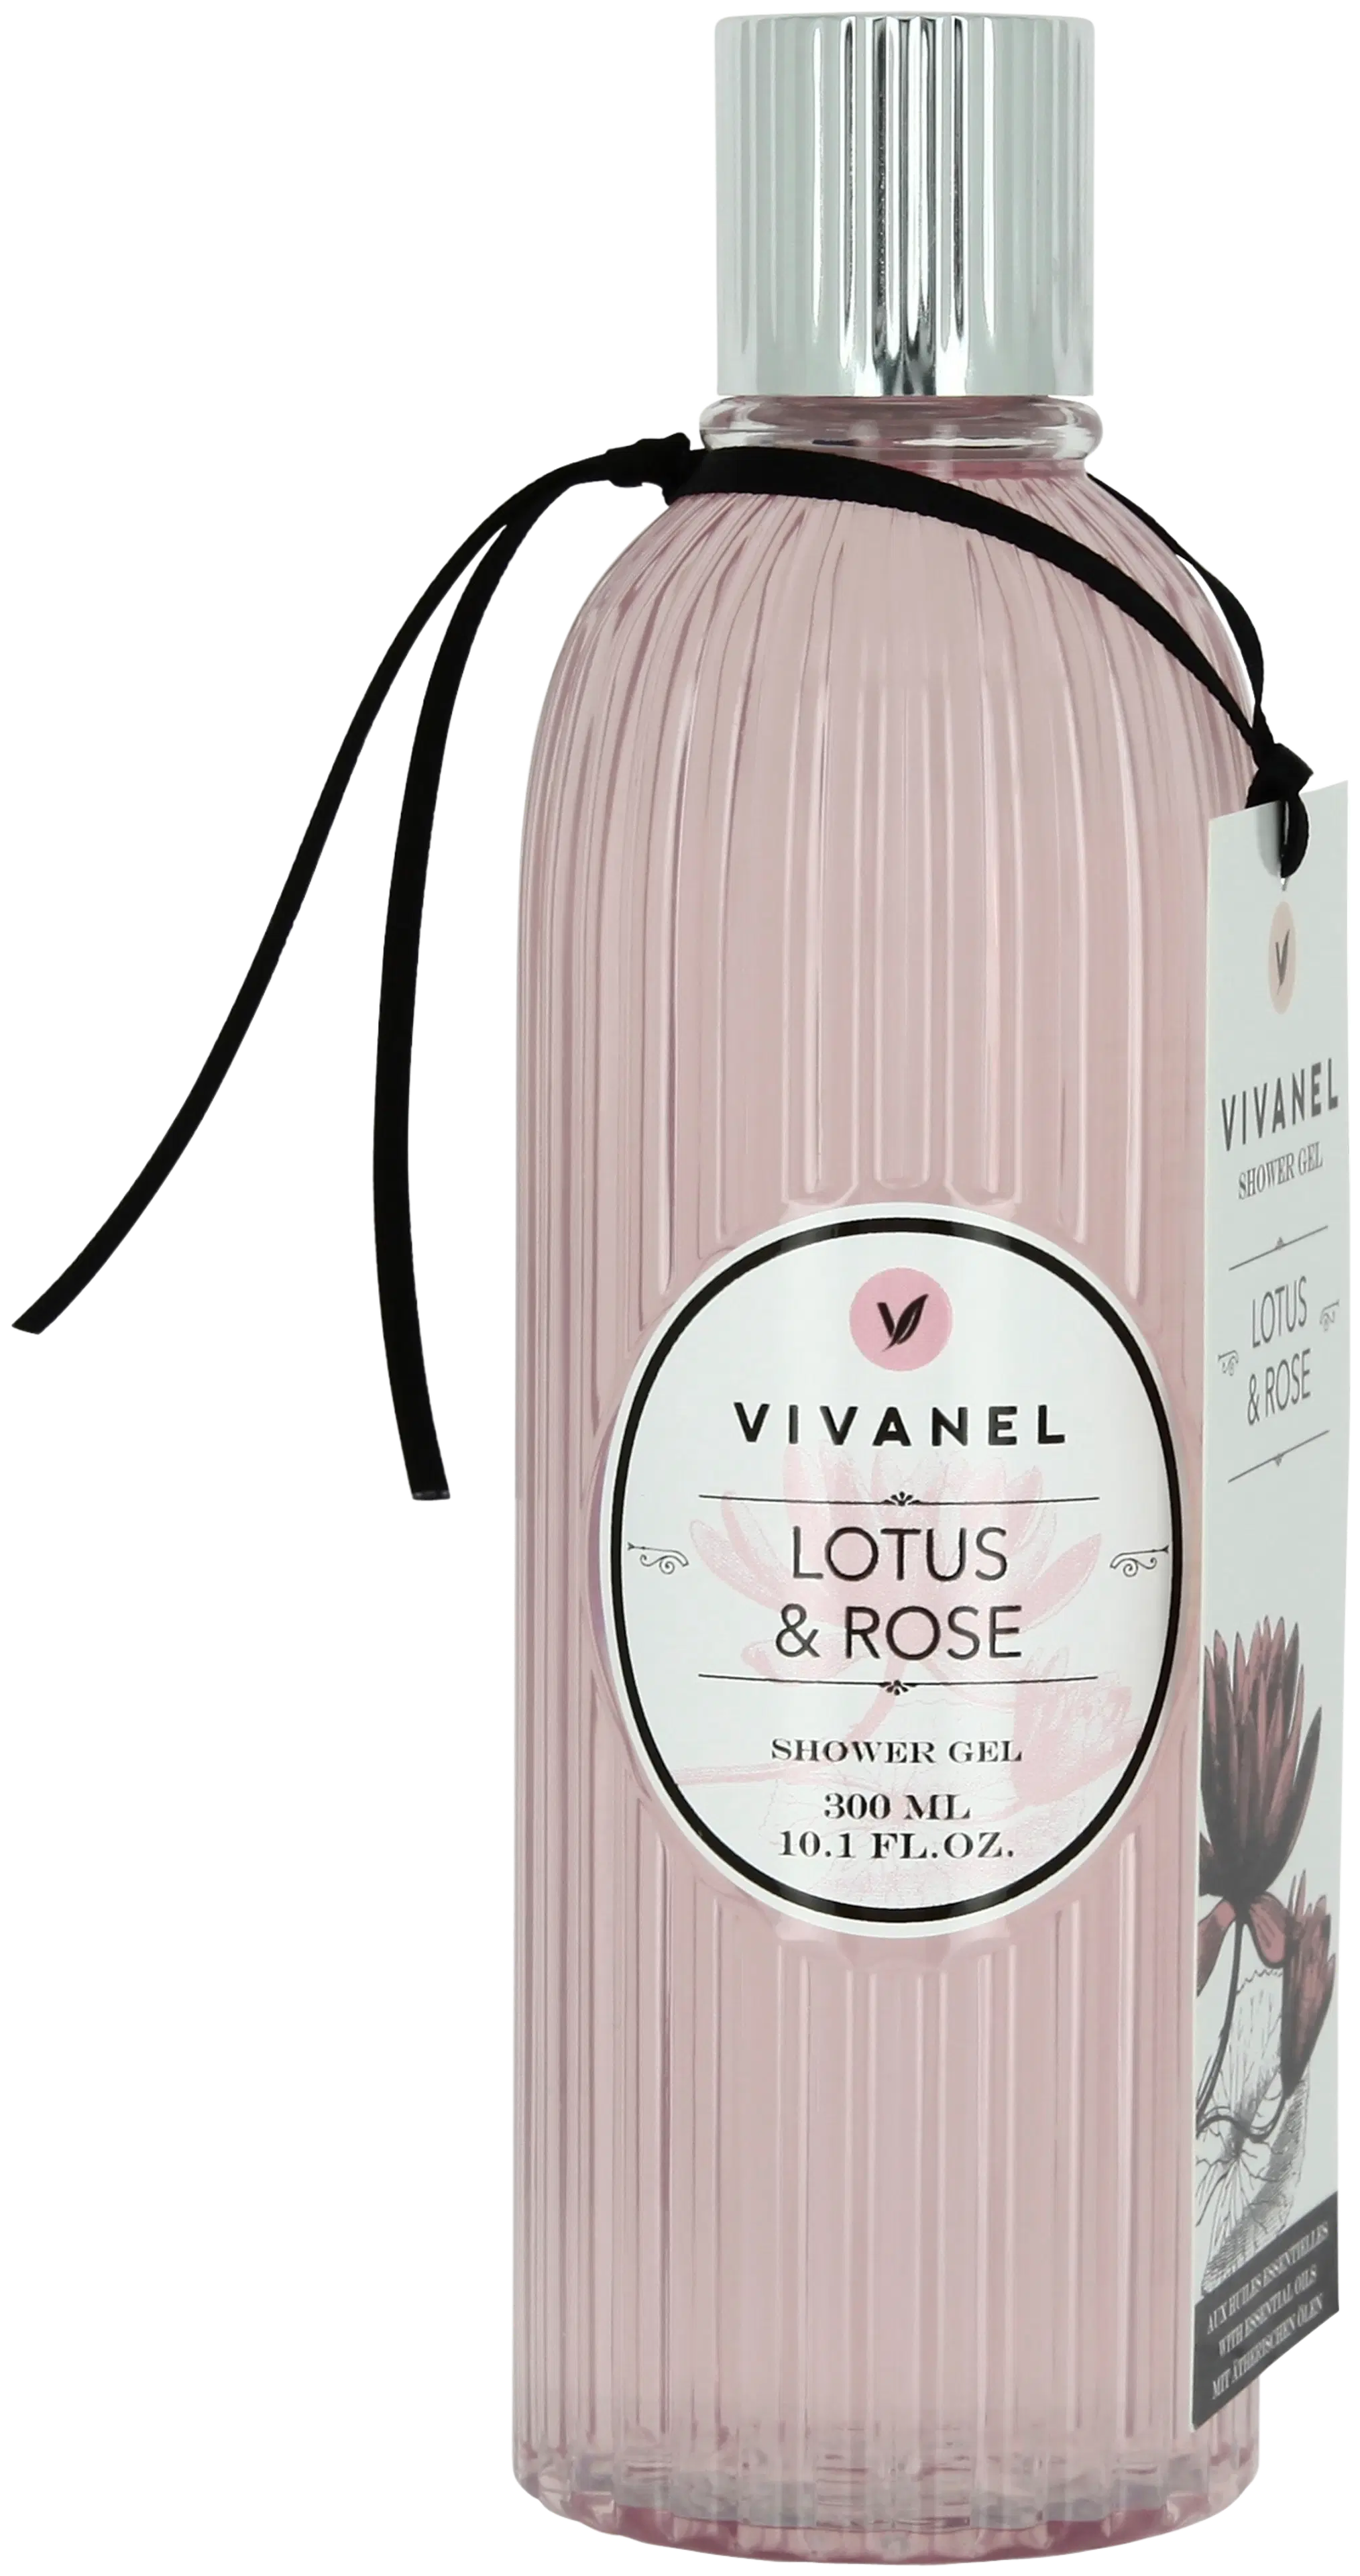 Vivanel suihkugeeli Lotus & Rose 300 ml